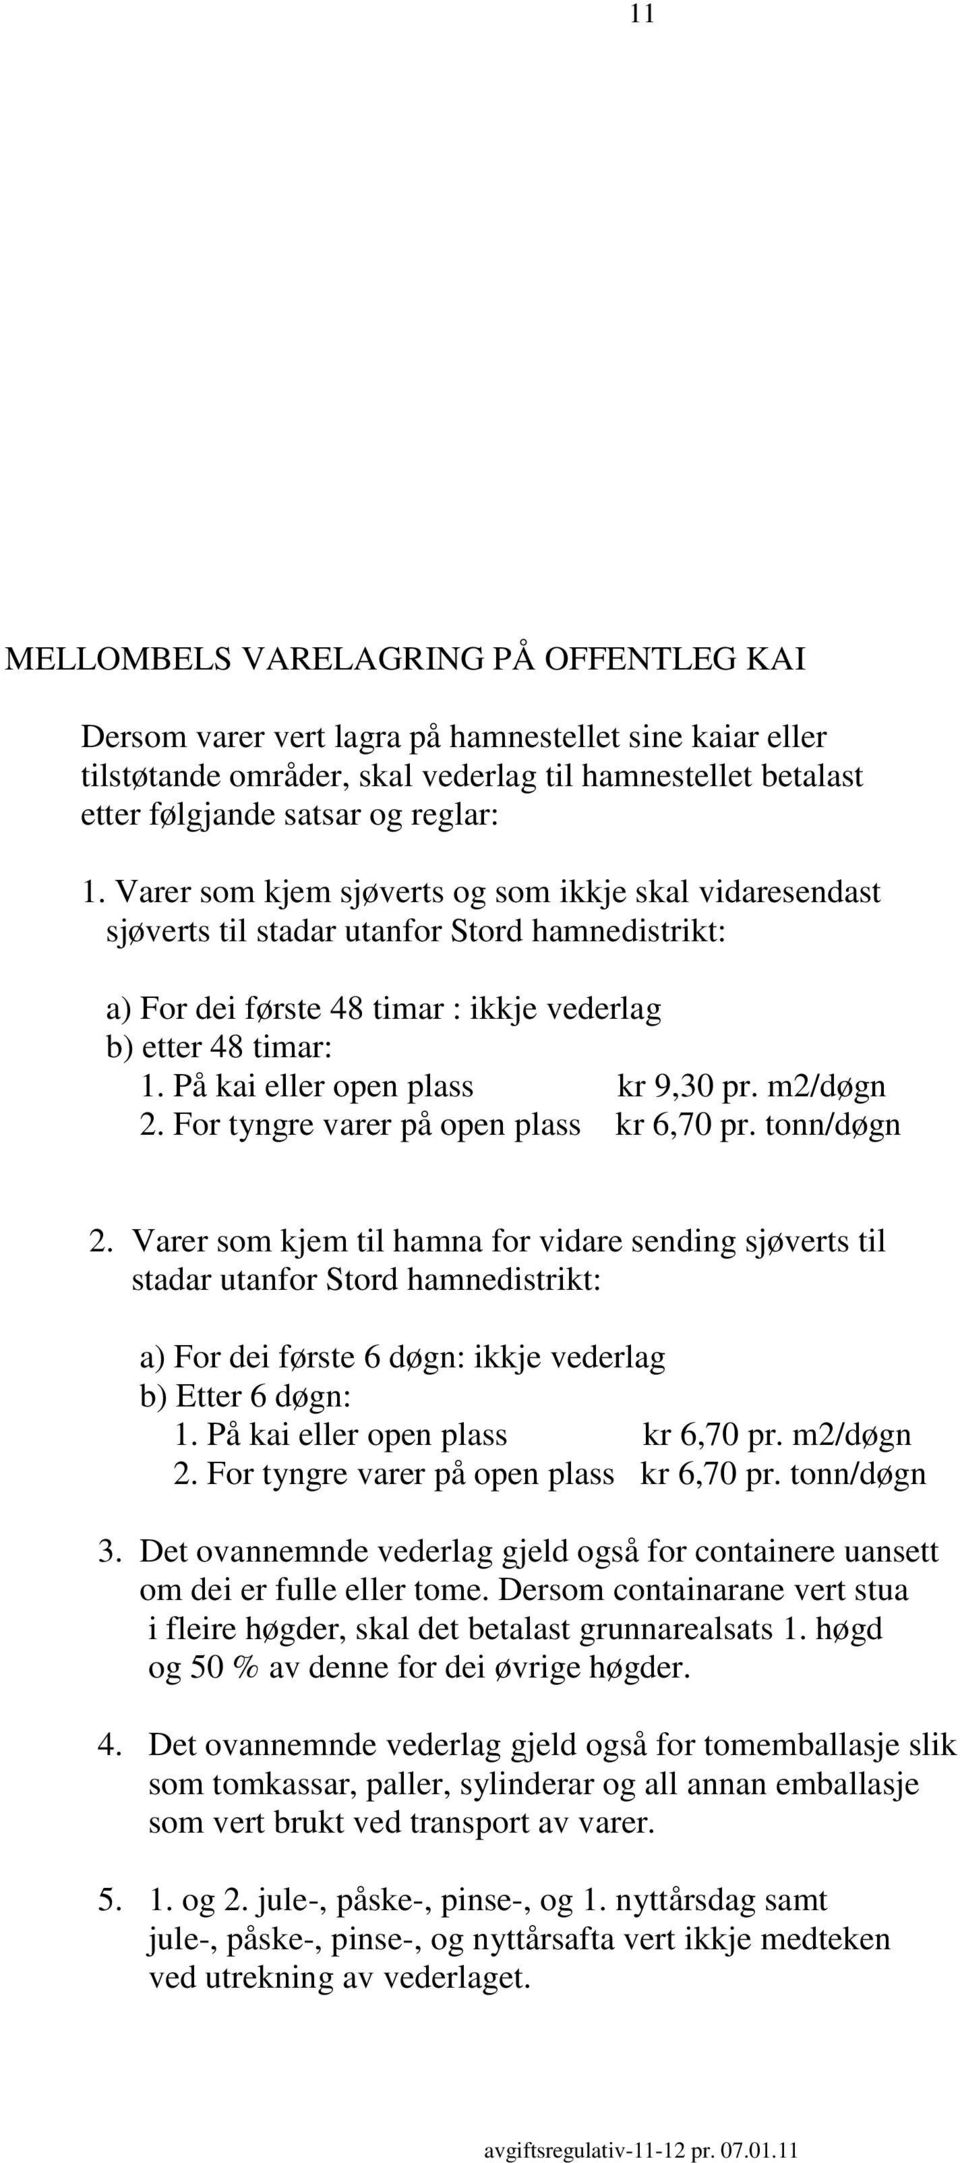 På kai eller open plass kr 9,30 pr. m2/døgn 2. For tyngre varer på open plass kr 6,70 pr. tonn/døgn 2.